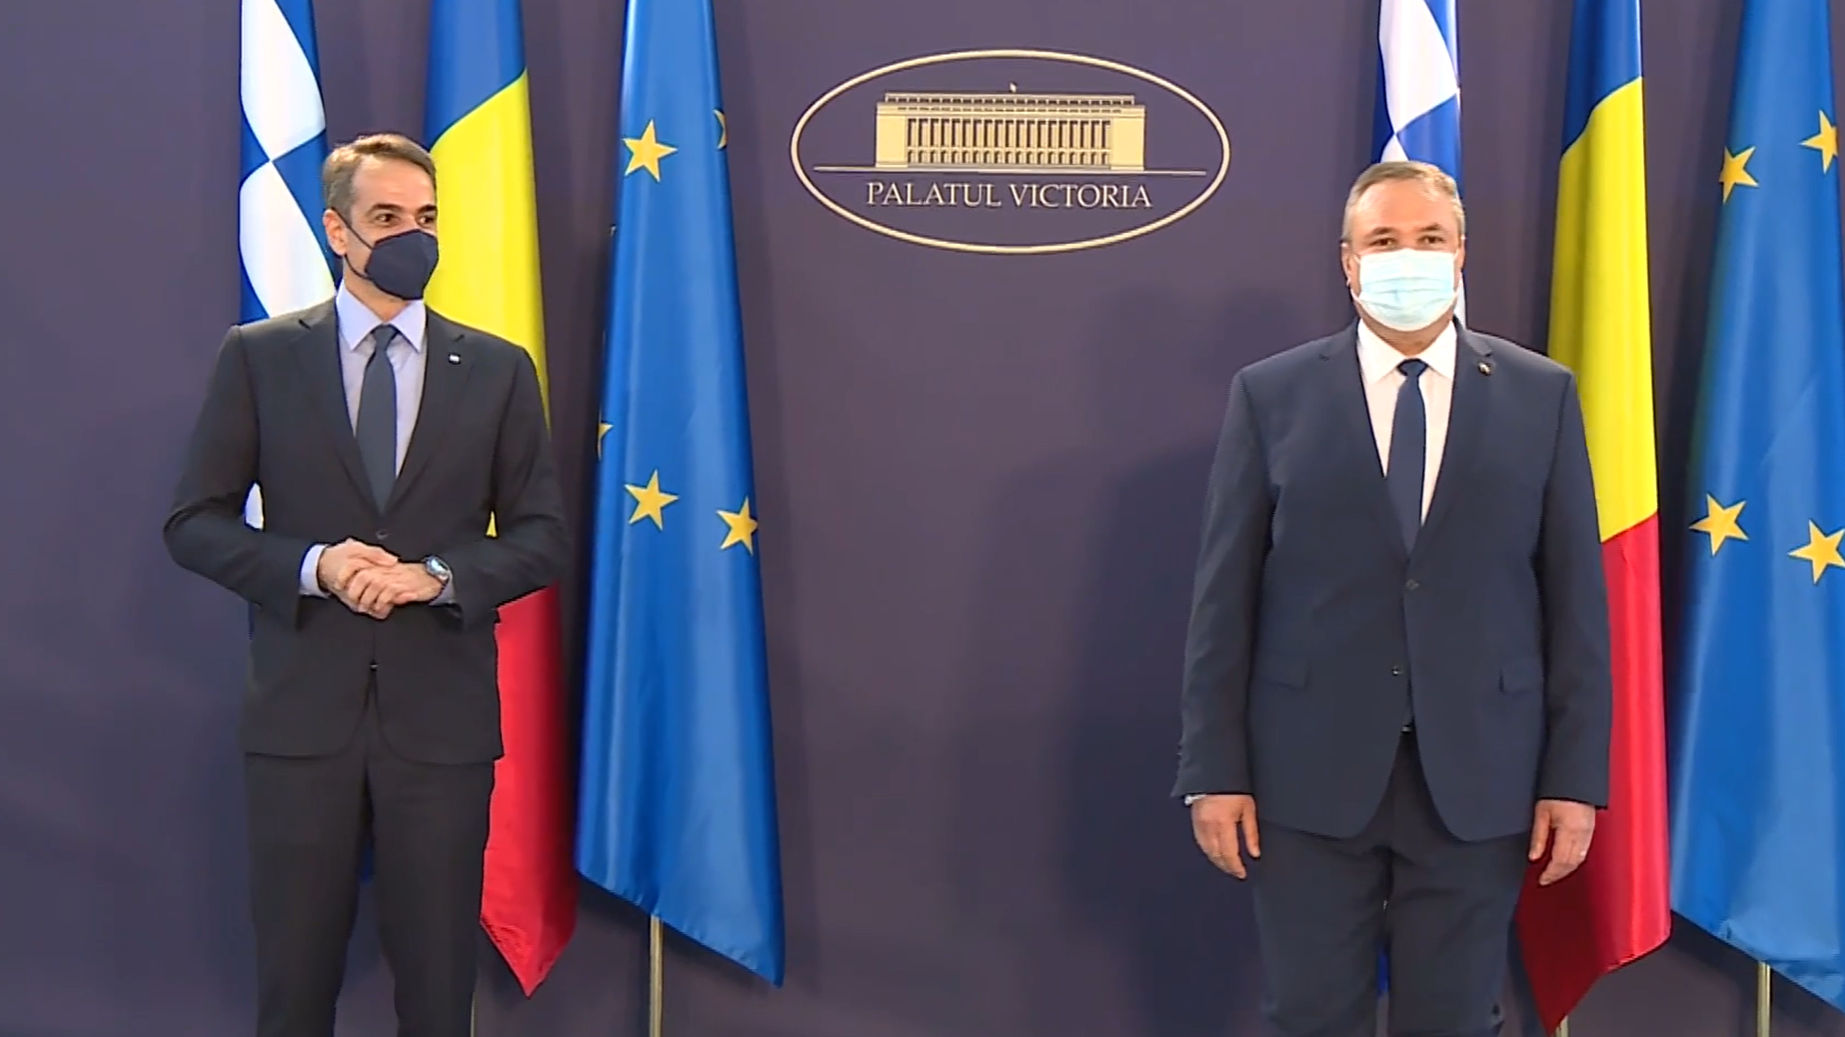 Întâmpinarea de către premierul Nicolae-Ionel Ciucă a prim-ministrului Republicii Elene Kyriakos Mitsotakis